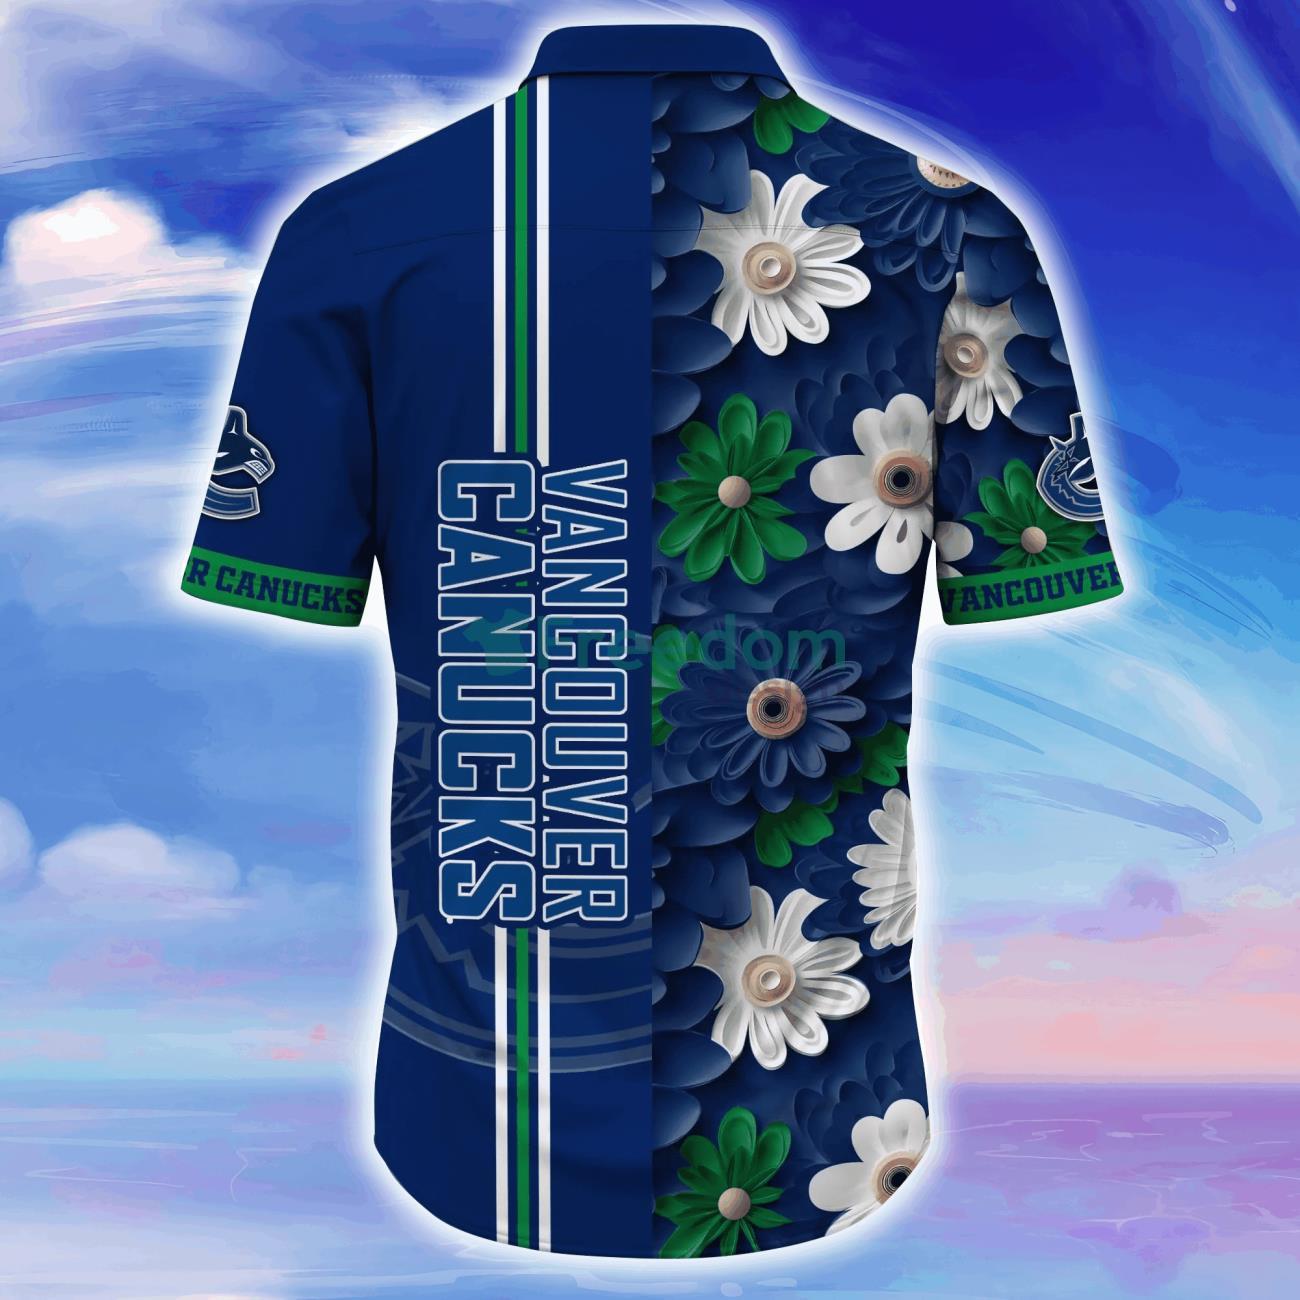 Vancouver Canucks NHL Flower Hawaiian Shirt For Men Women Impressive Gift  For Fans - Freedomdesign